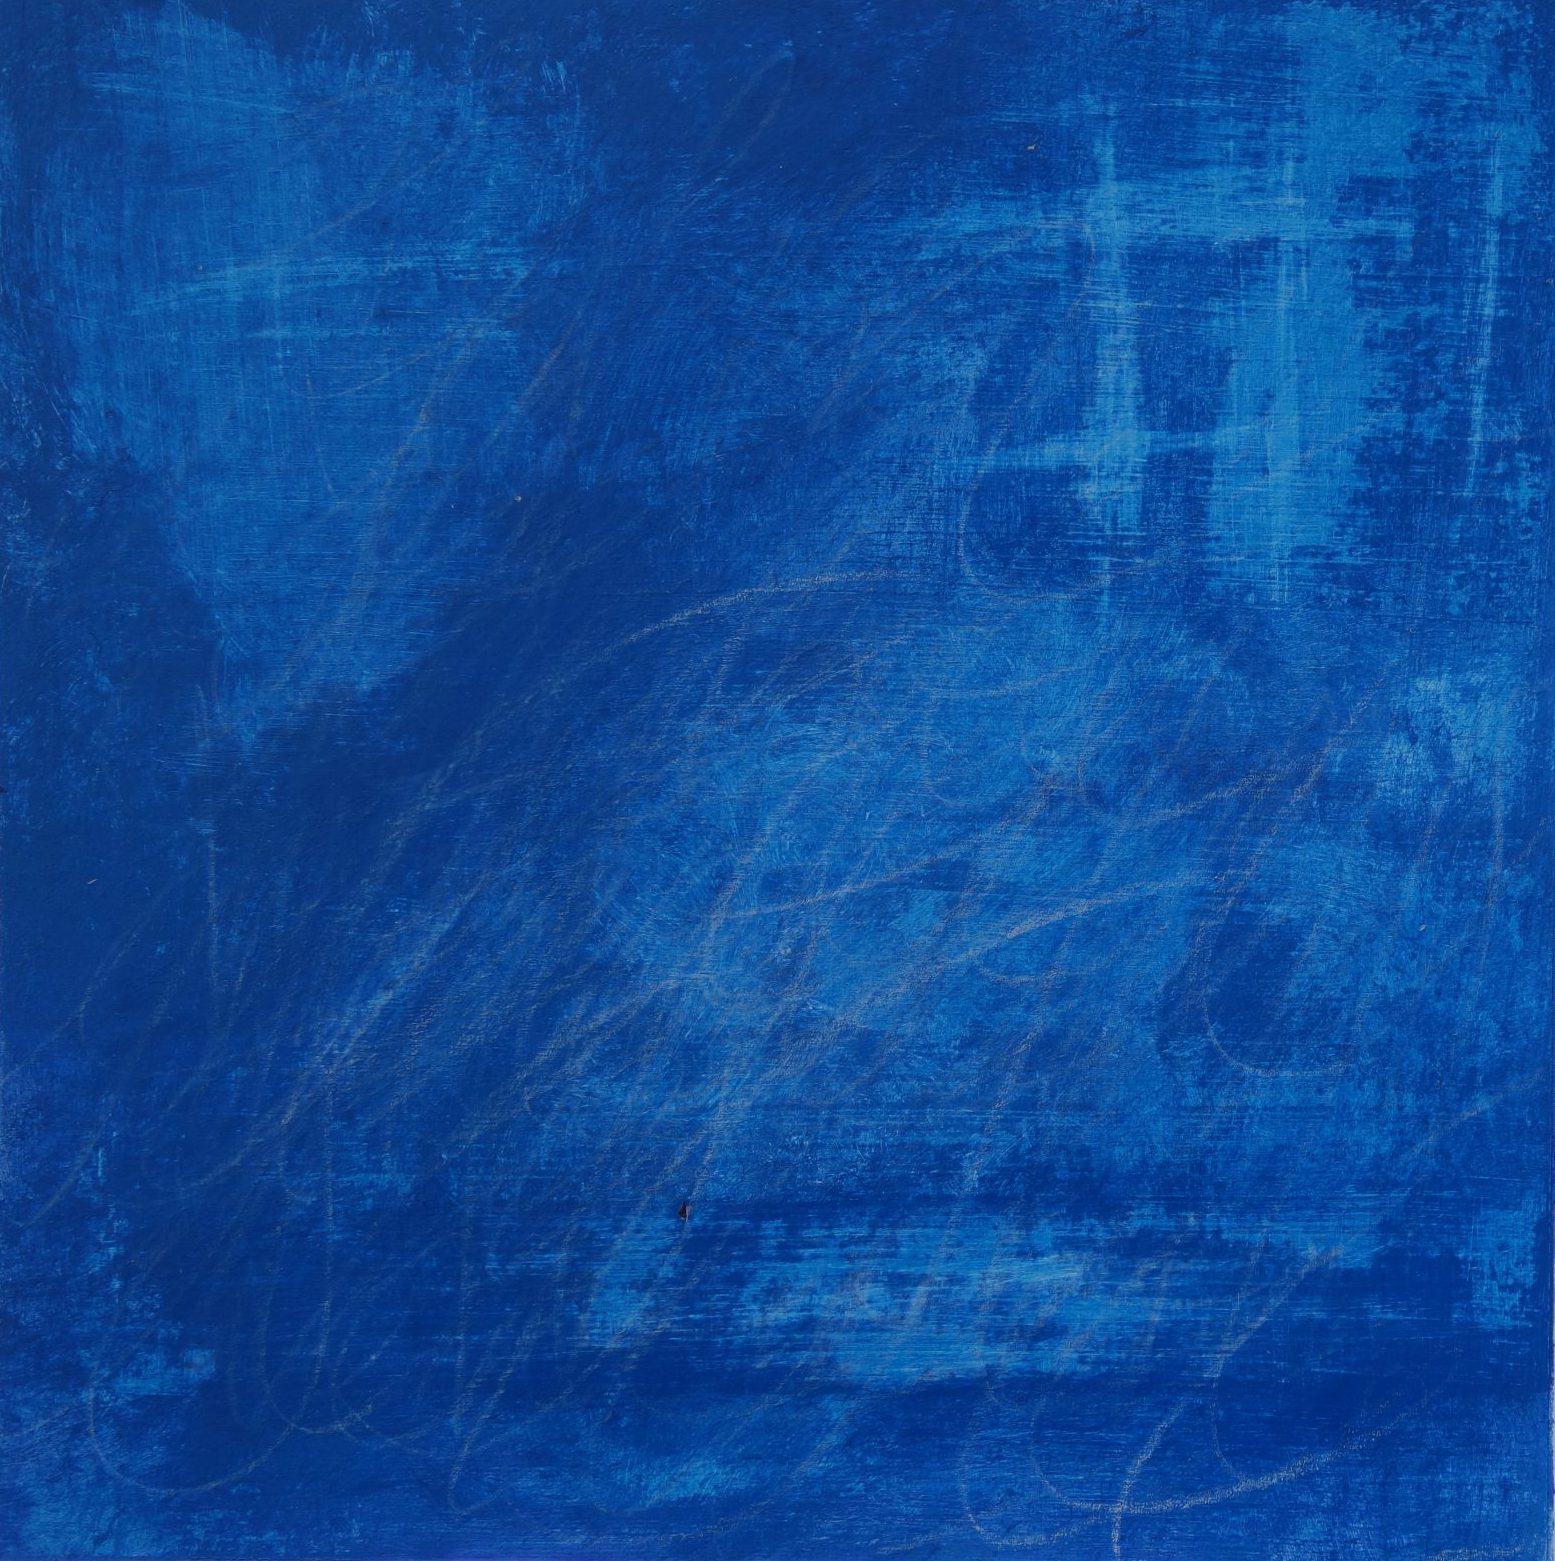 Das Foto zeigt ein kobaltblaues Gemälde, auf dem einige hellere Bereiche sichtbar sind. Teilweise ist nicht lesbare Schrift in weiß zu erkennen.